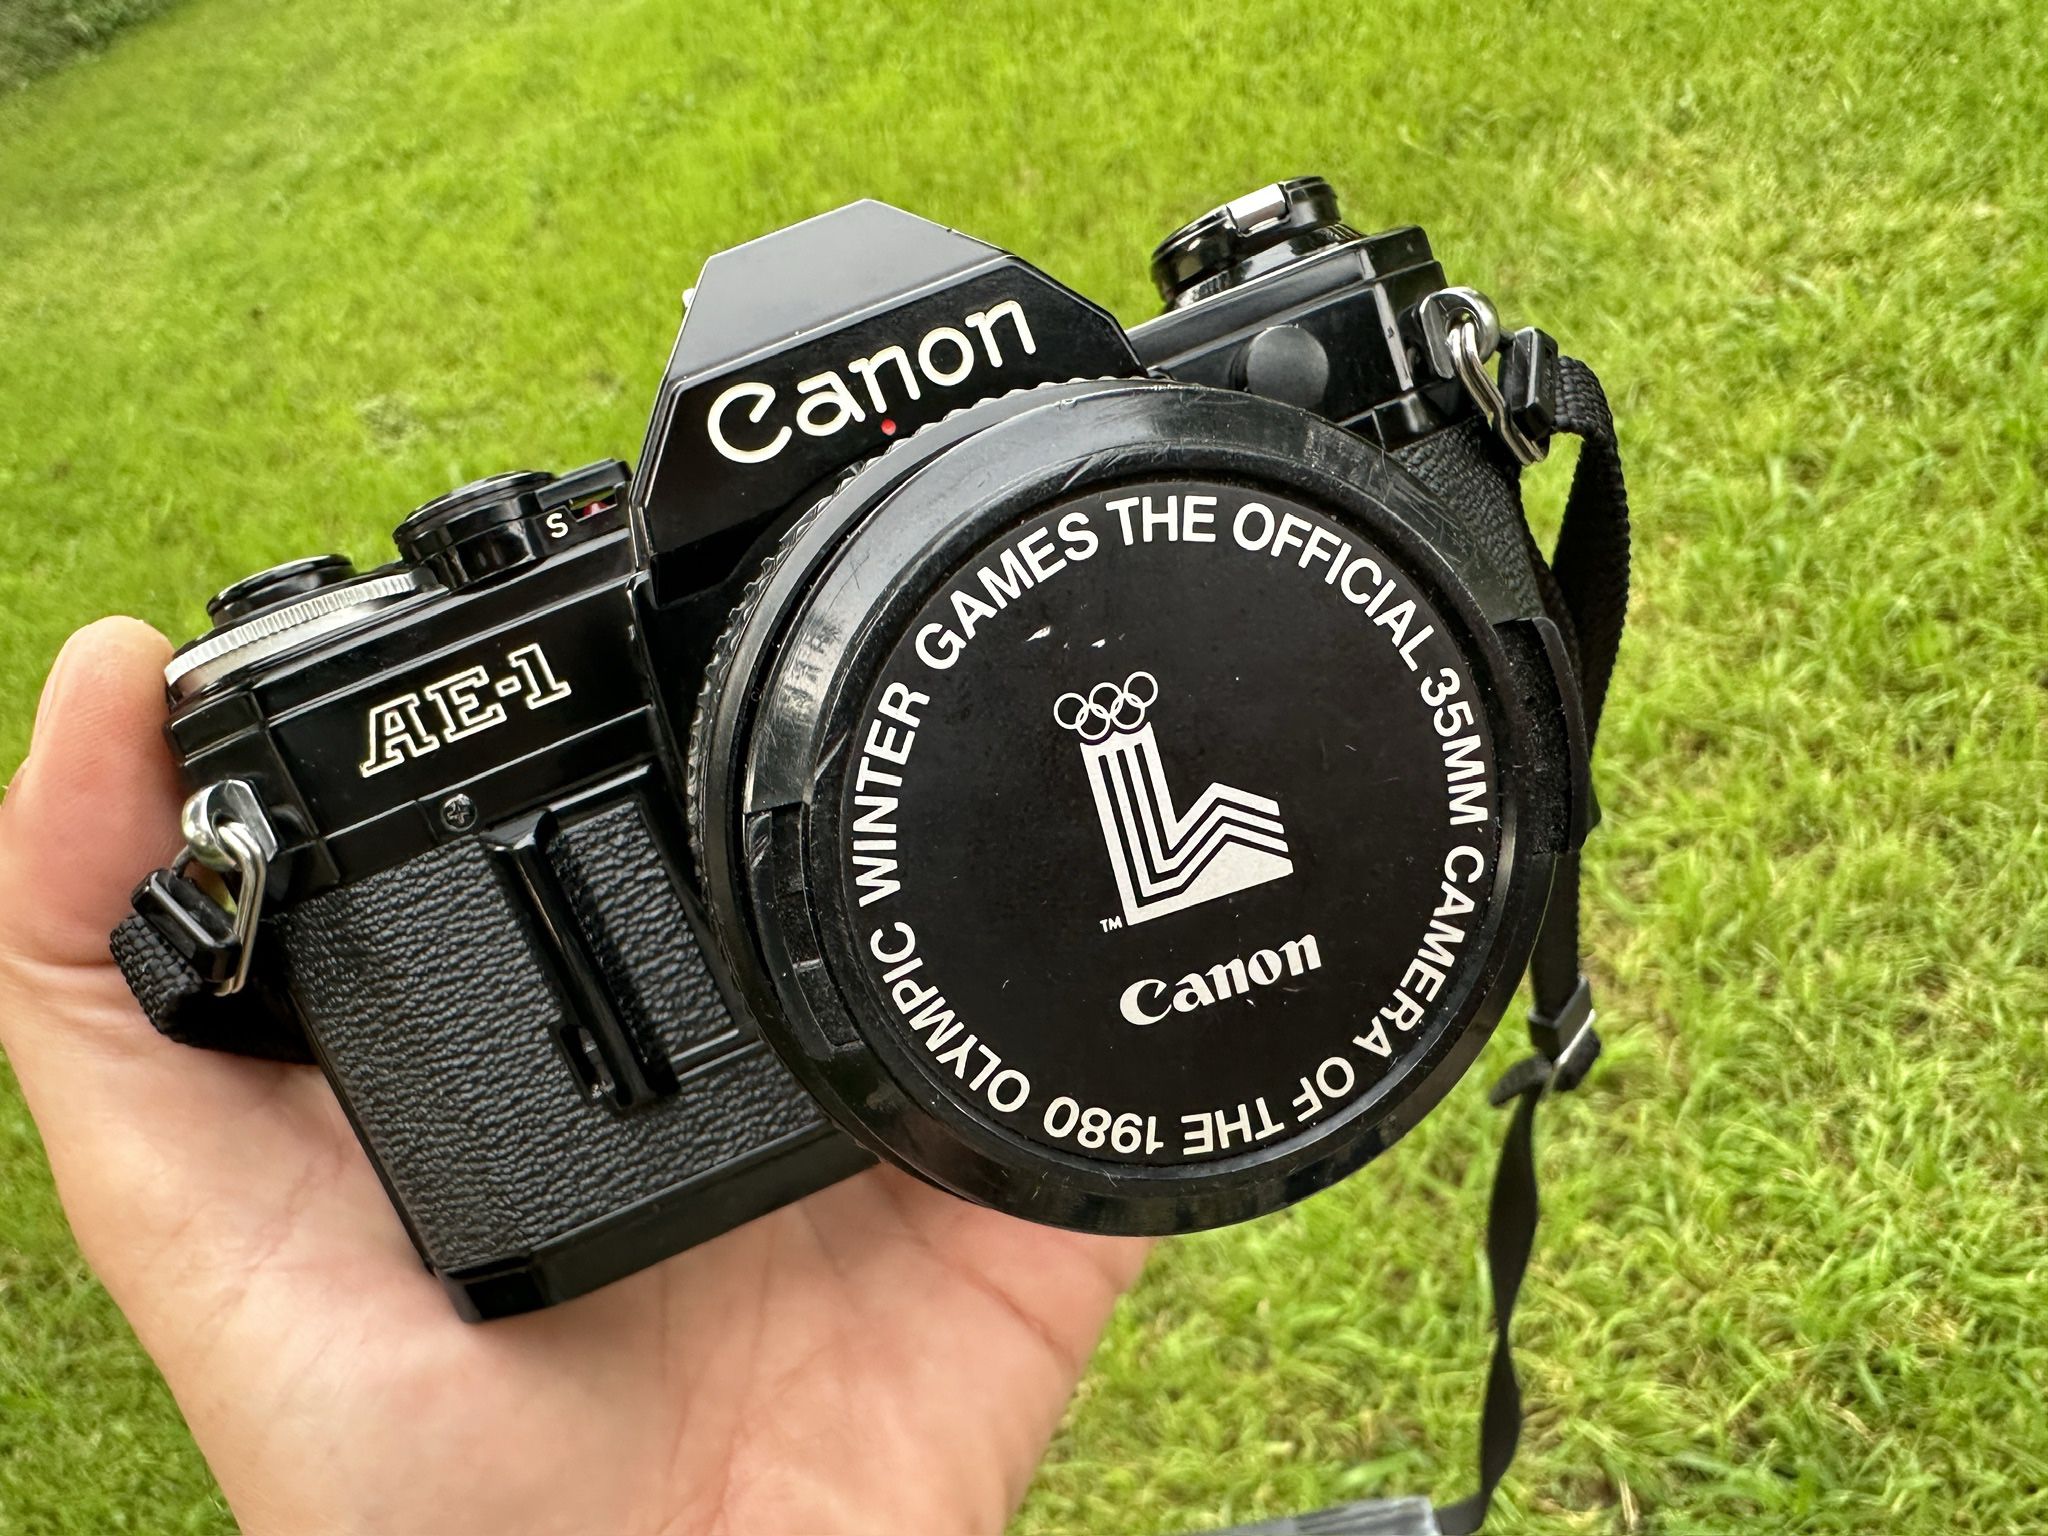 [SCARCE] Black Canon AE-1 + 50mm 1.8 35mm film camera